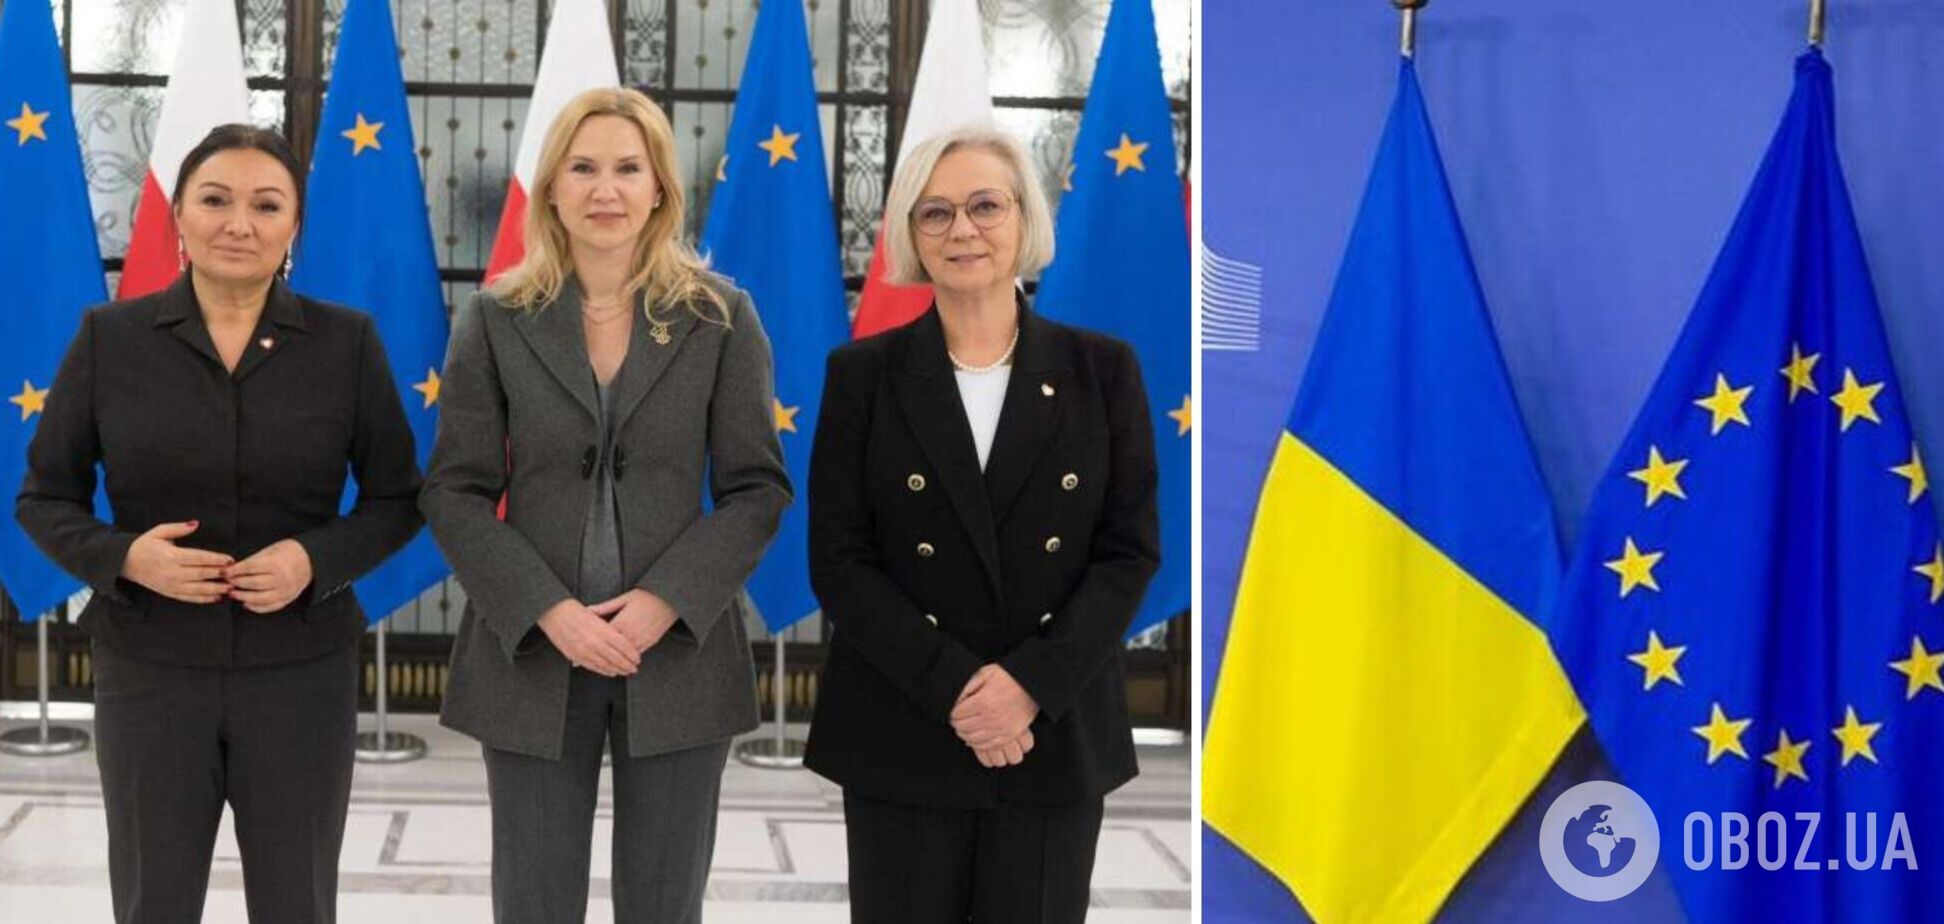 Вице-спикер Кондратюк обсудила поддержку вступления Украины в ЕС с новым руководством Сейма Польши